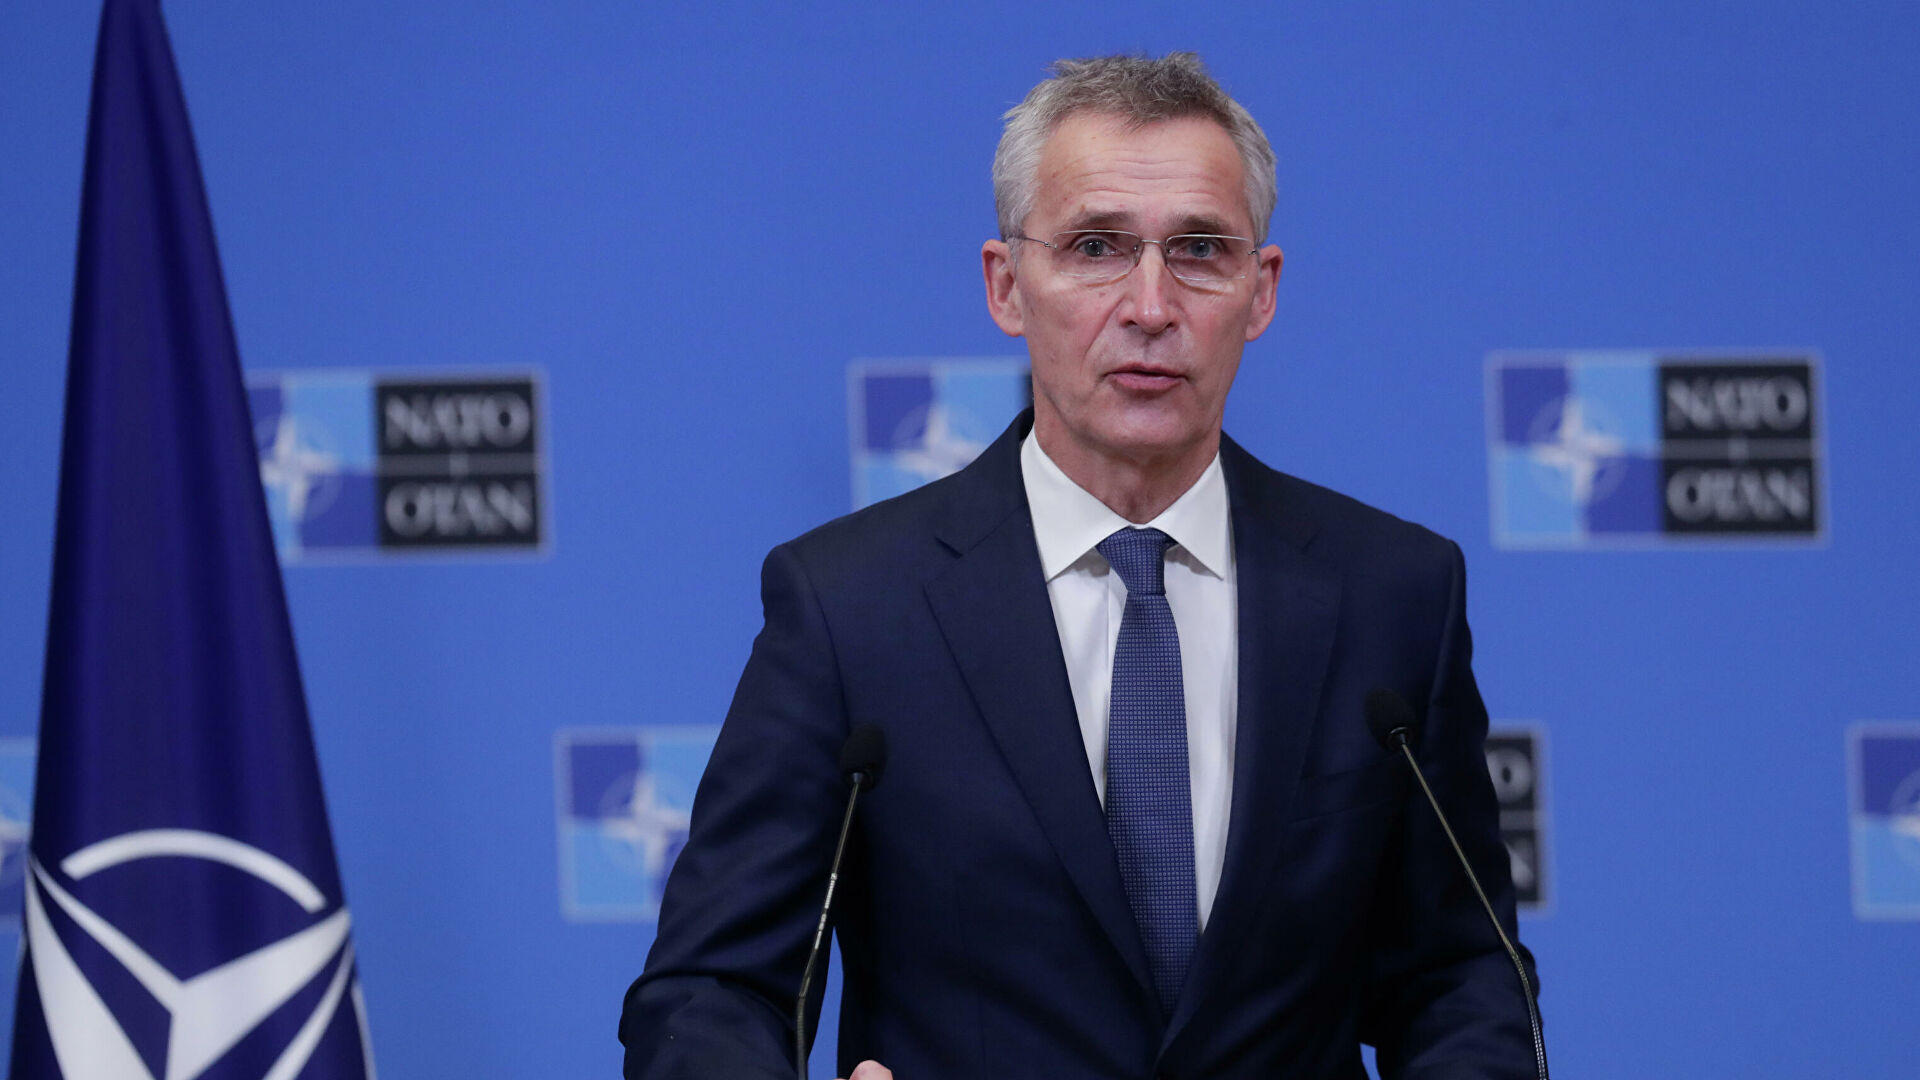 OTAN dice que entablará diálogo con Rusia «de buena fe», pero advierte que la diplomacia puede fallar